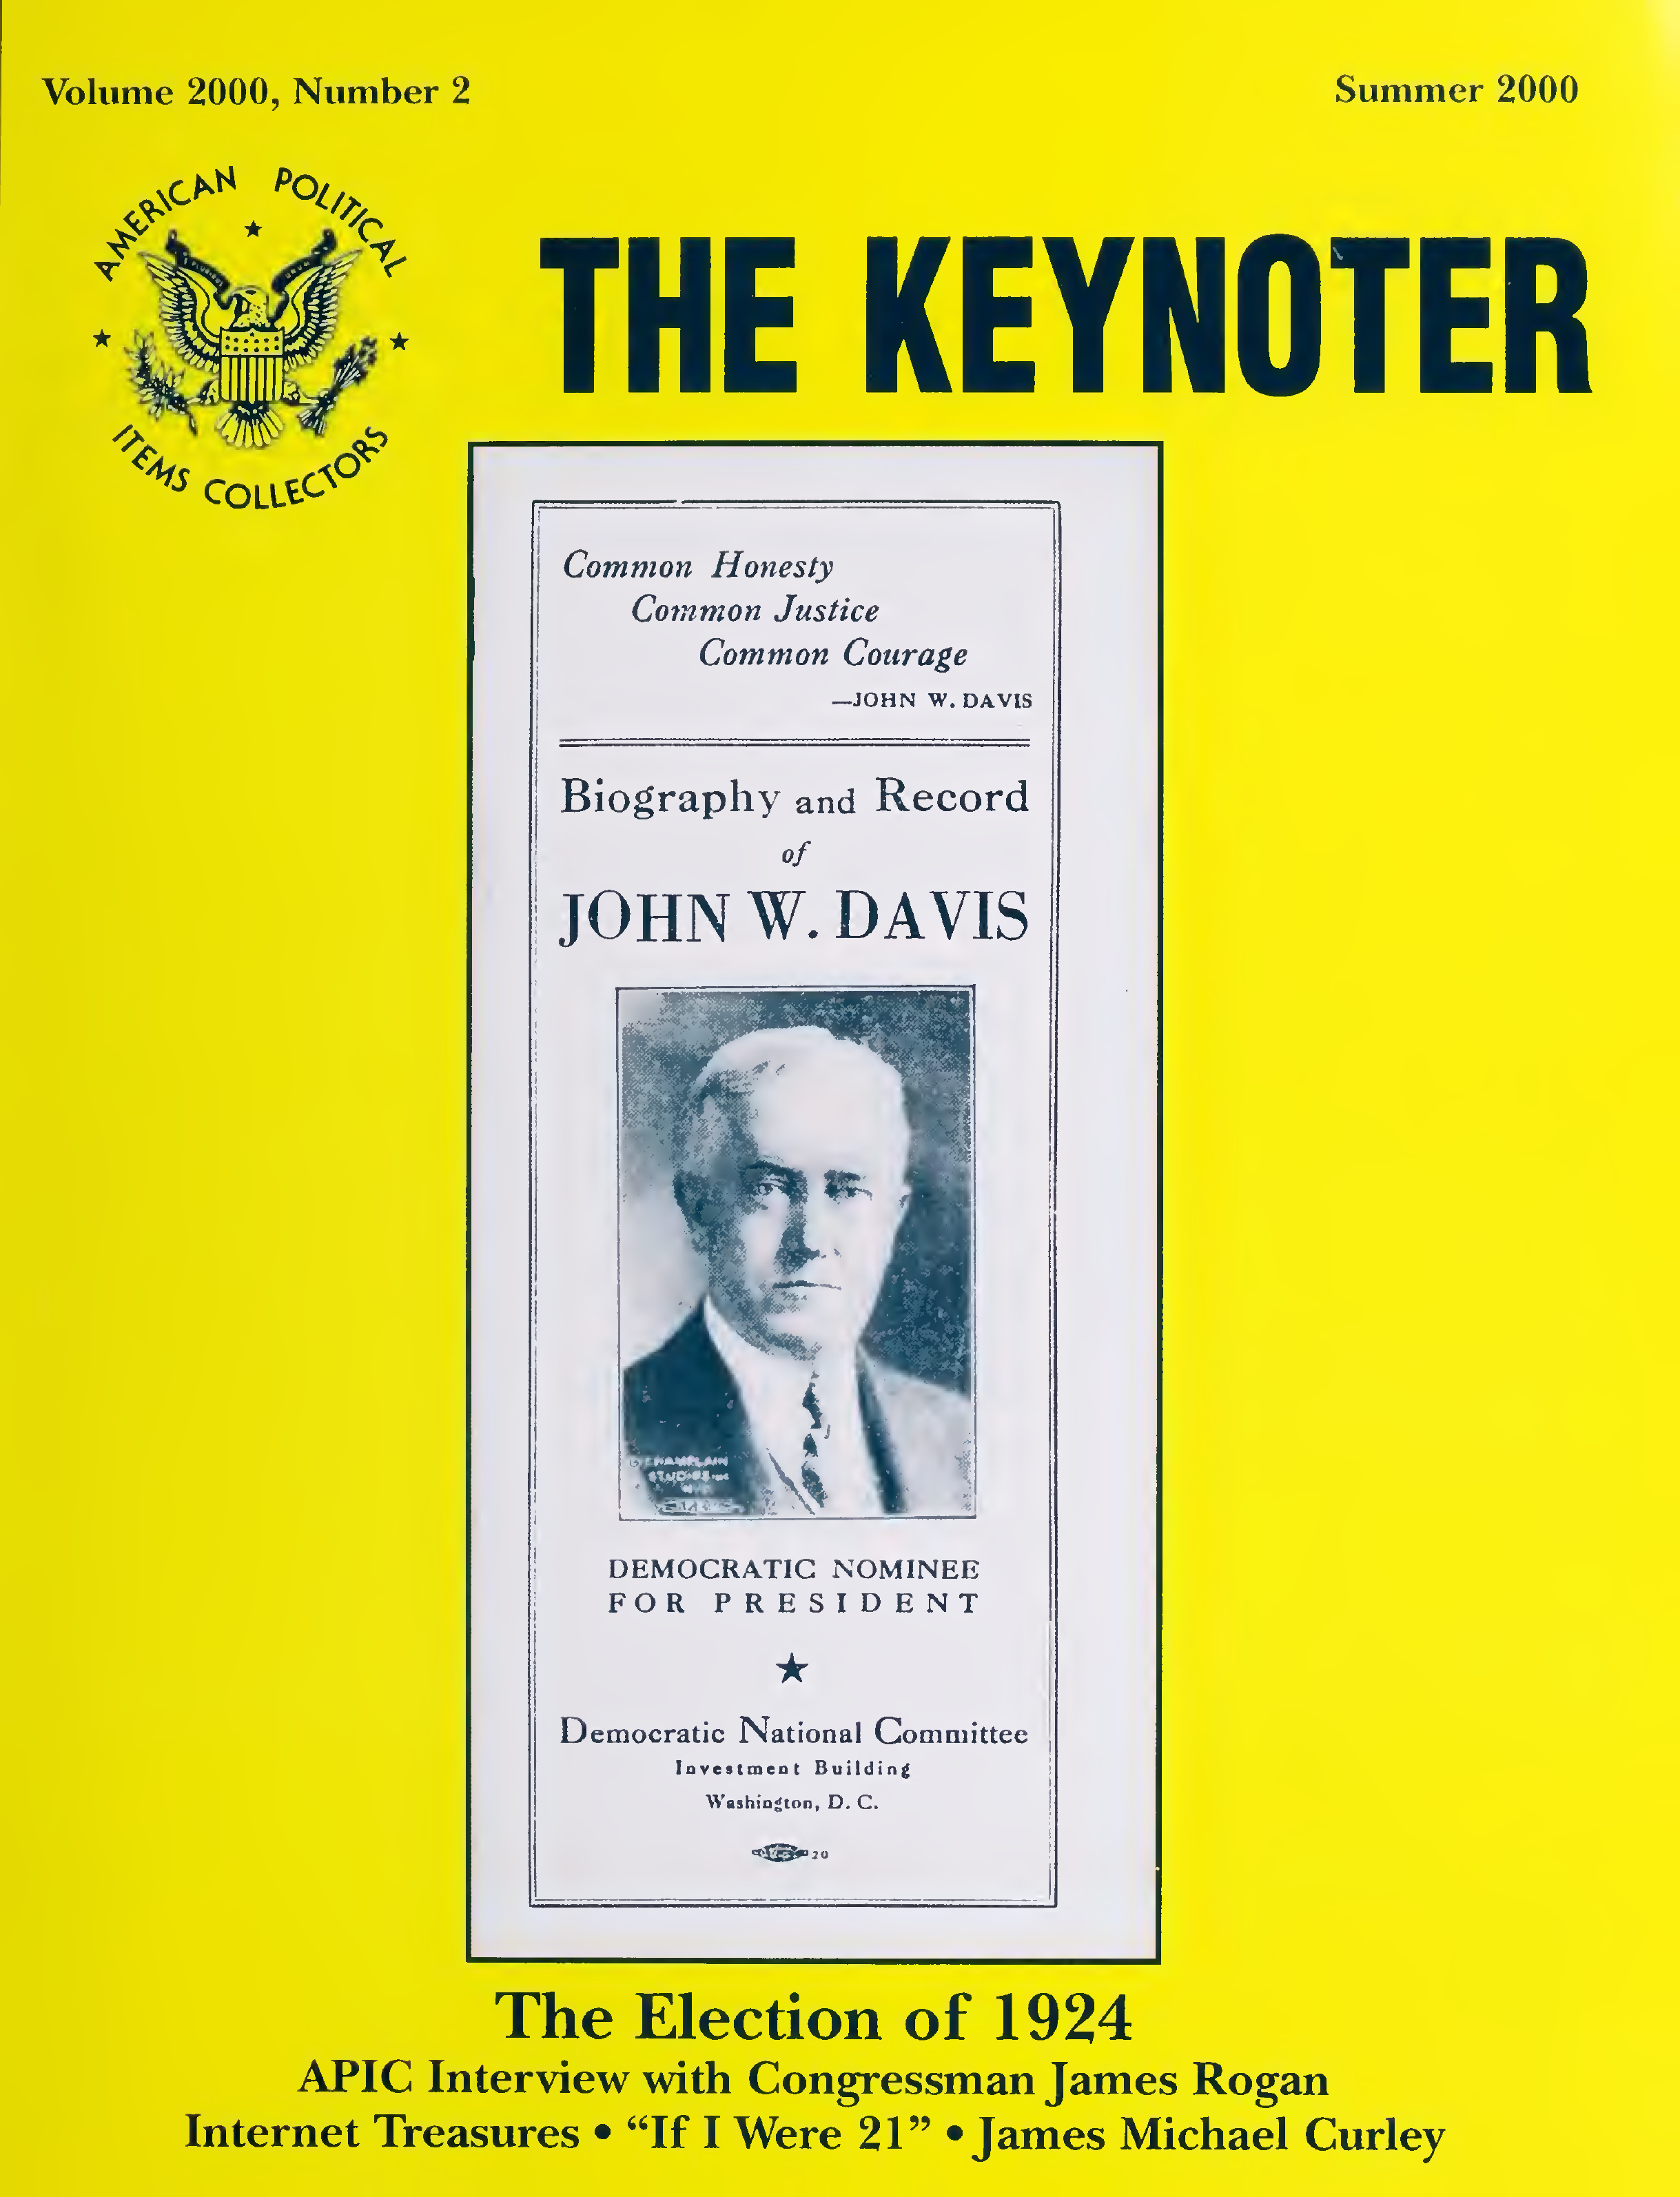 Keynoter 2000 - Summer - Issue 2